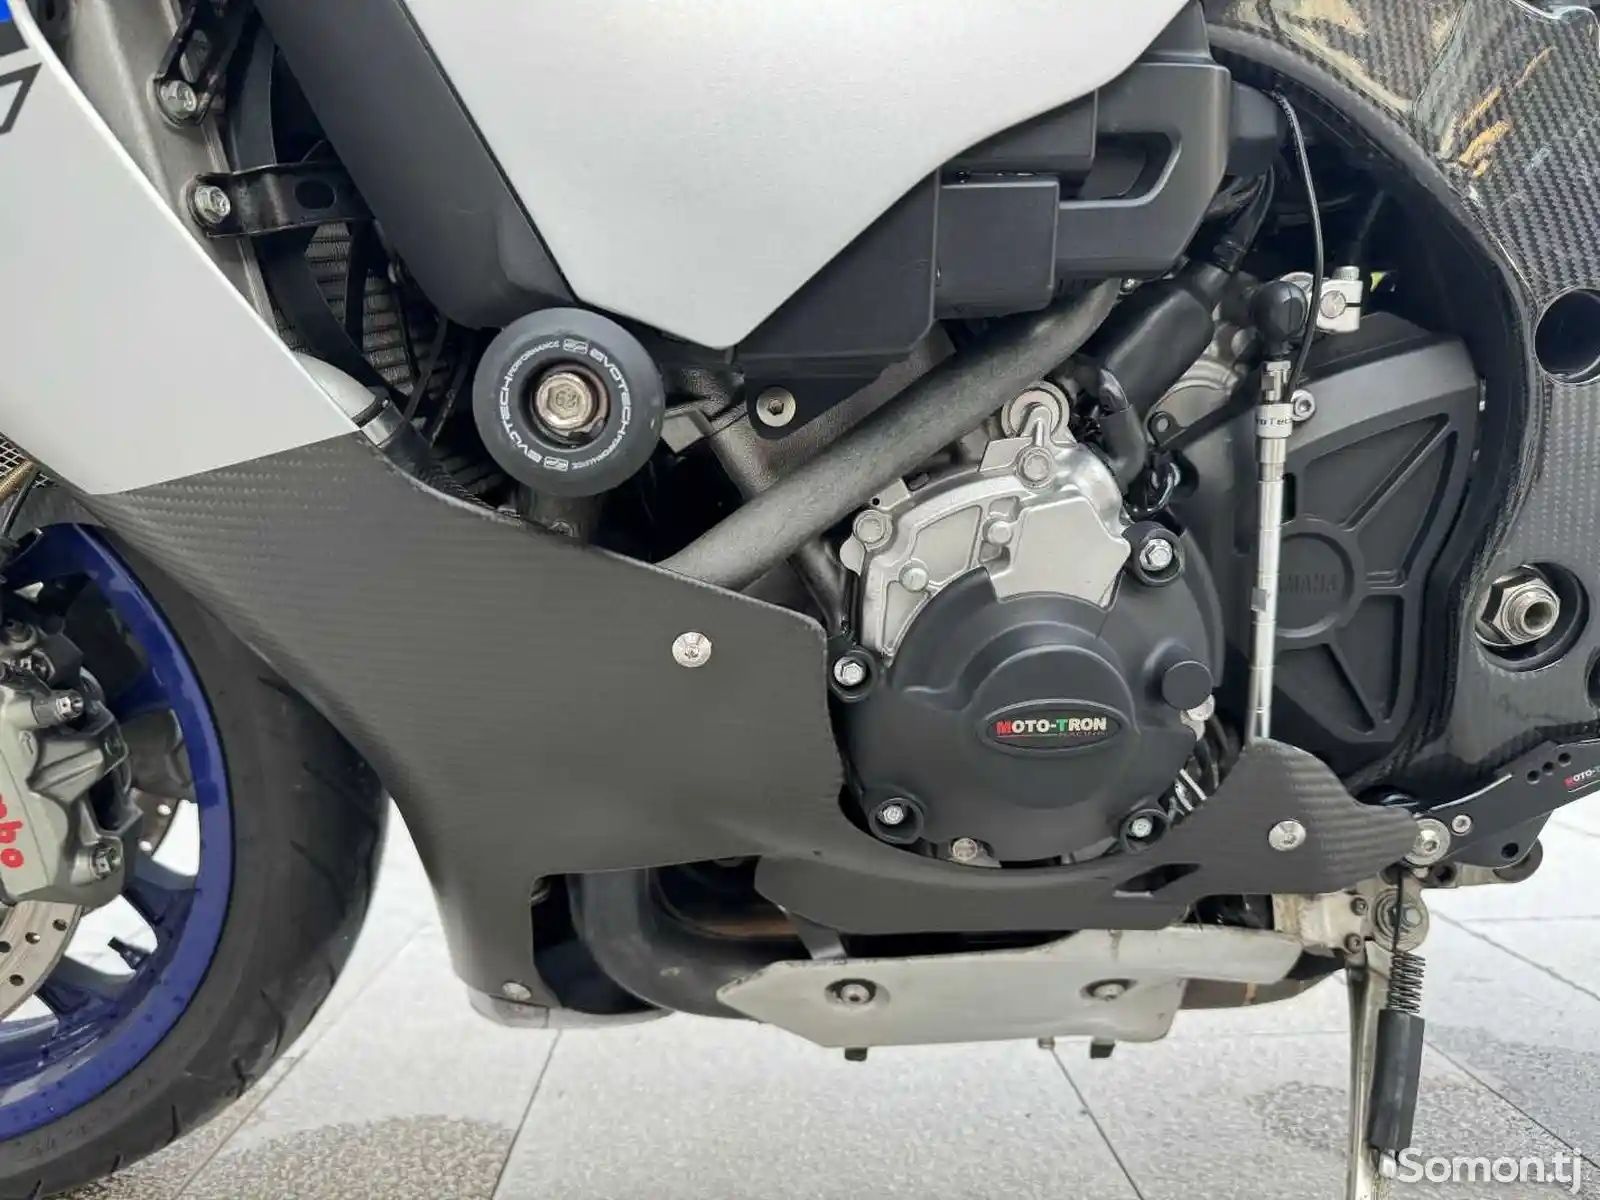 Мотоцикл Yamaha YZF-R1M 1000cm³ на заказ-4